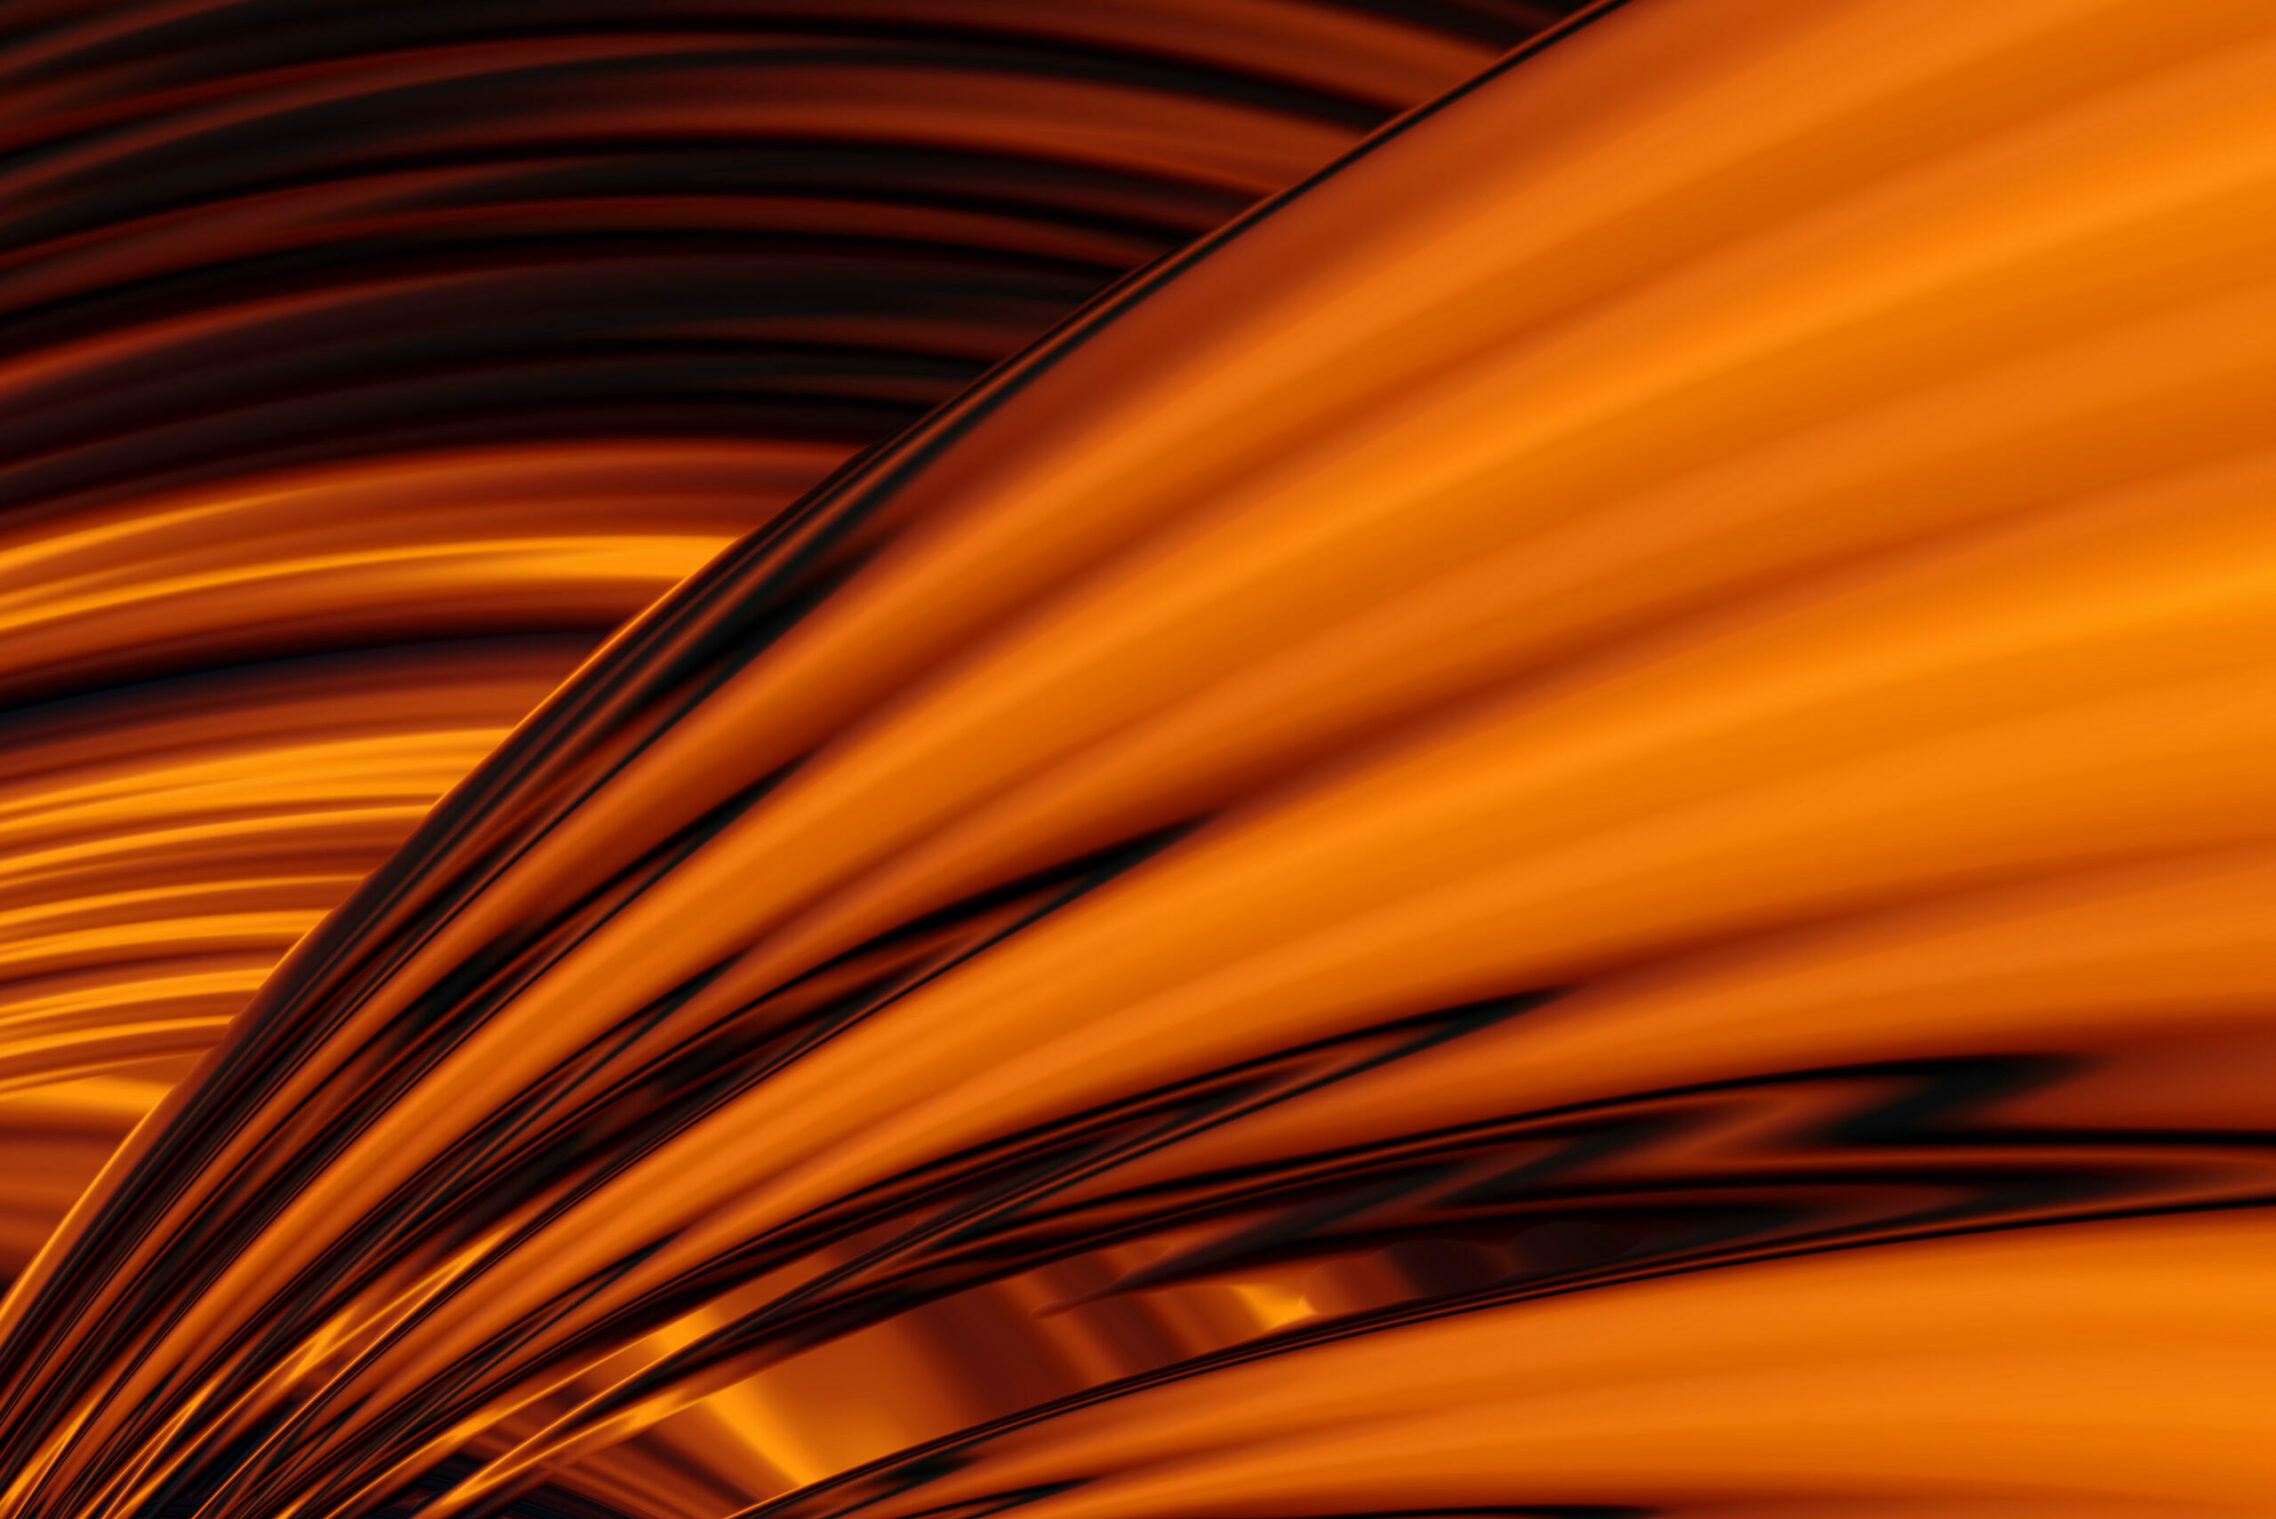 image technologique orange représentant karbonalpha plateforme de gestion privée tout en un révolutionnant le quotidien des cgp et cgpi grâce à une agrégation des données nouvelles génération